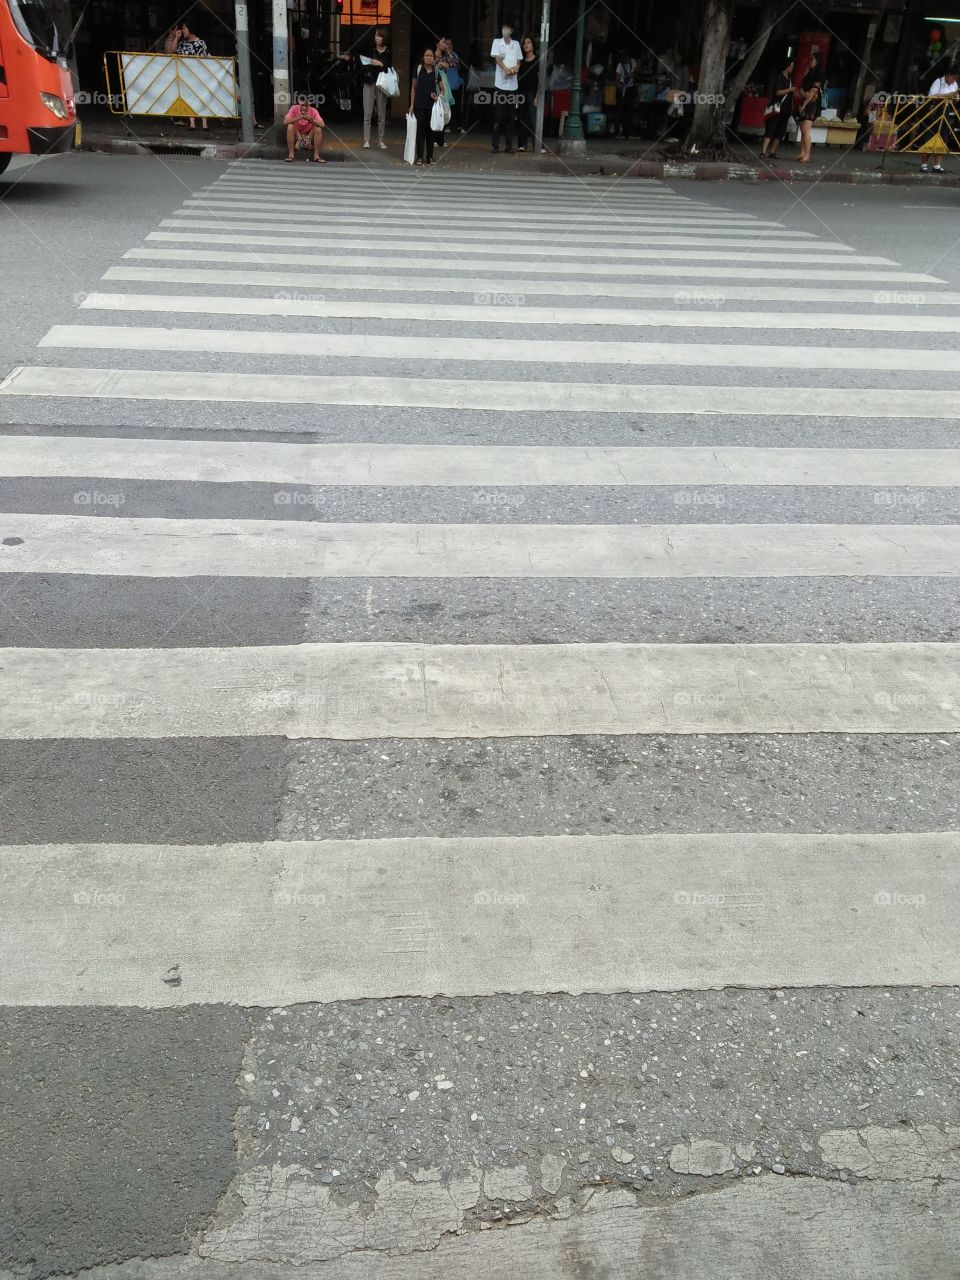 My way...Zebra Way